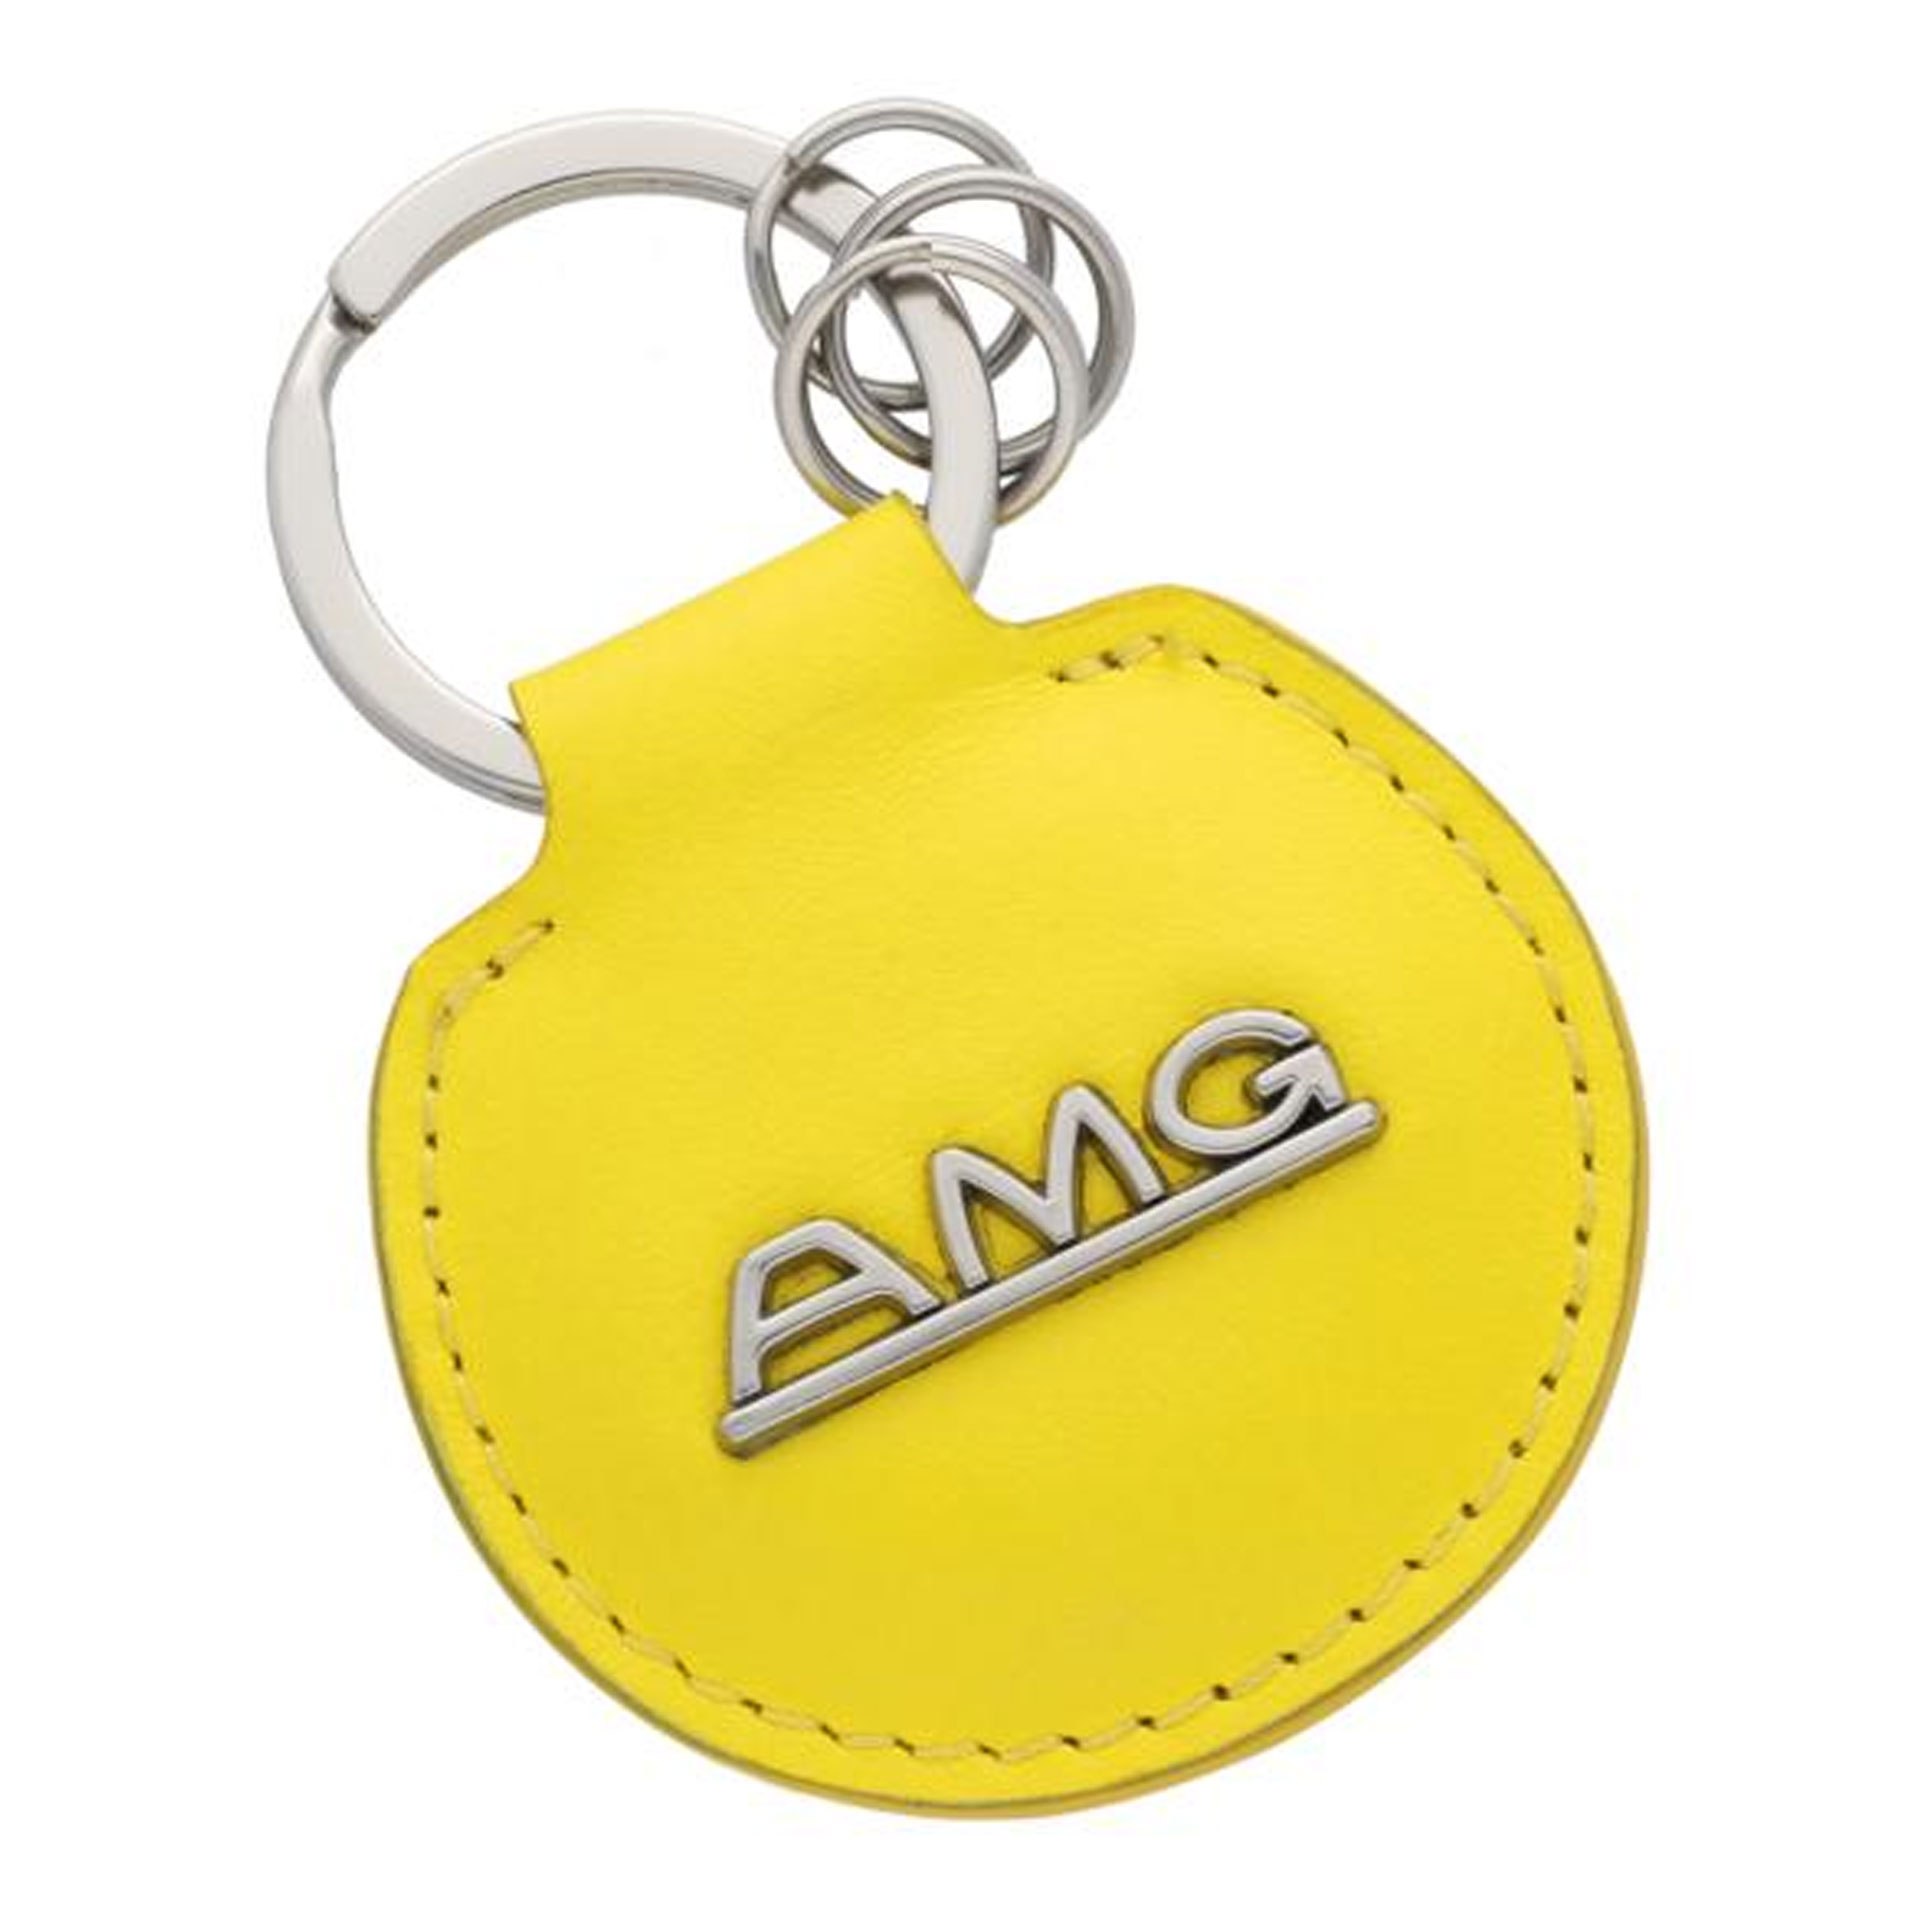 Mercedes-AMG Schlüsselanhänger Classic gelb/silberfarben B66959352